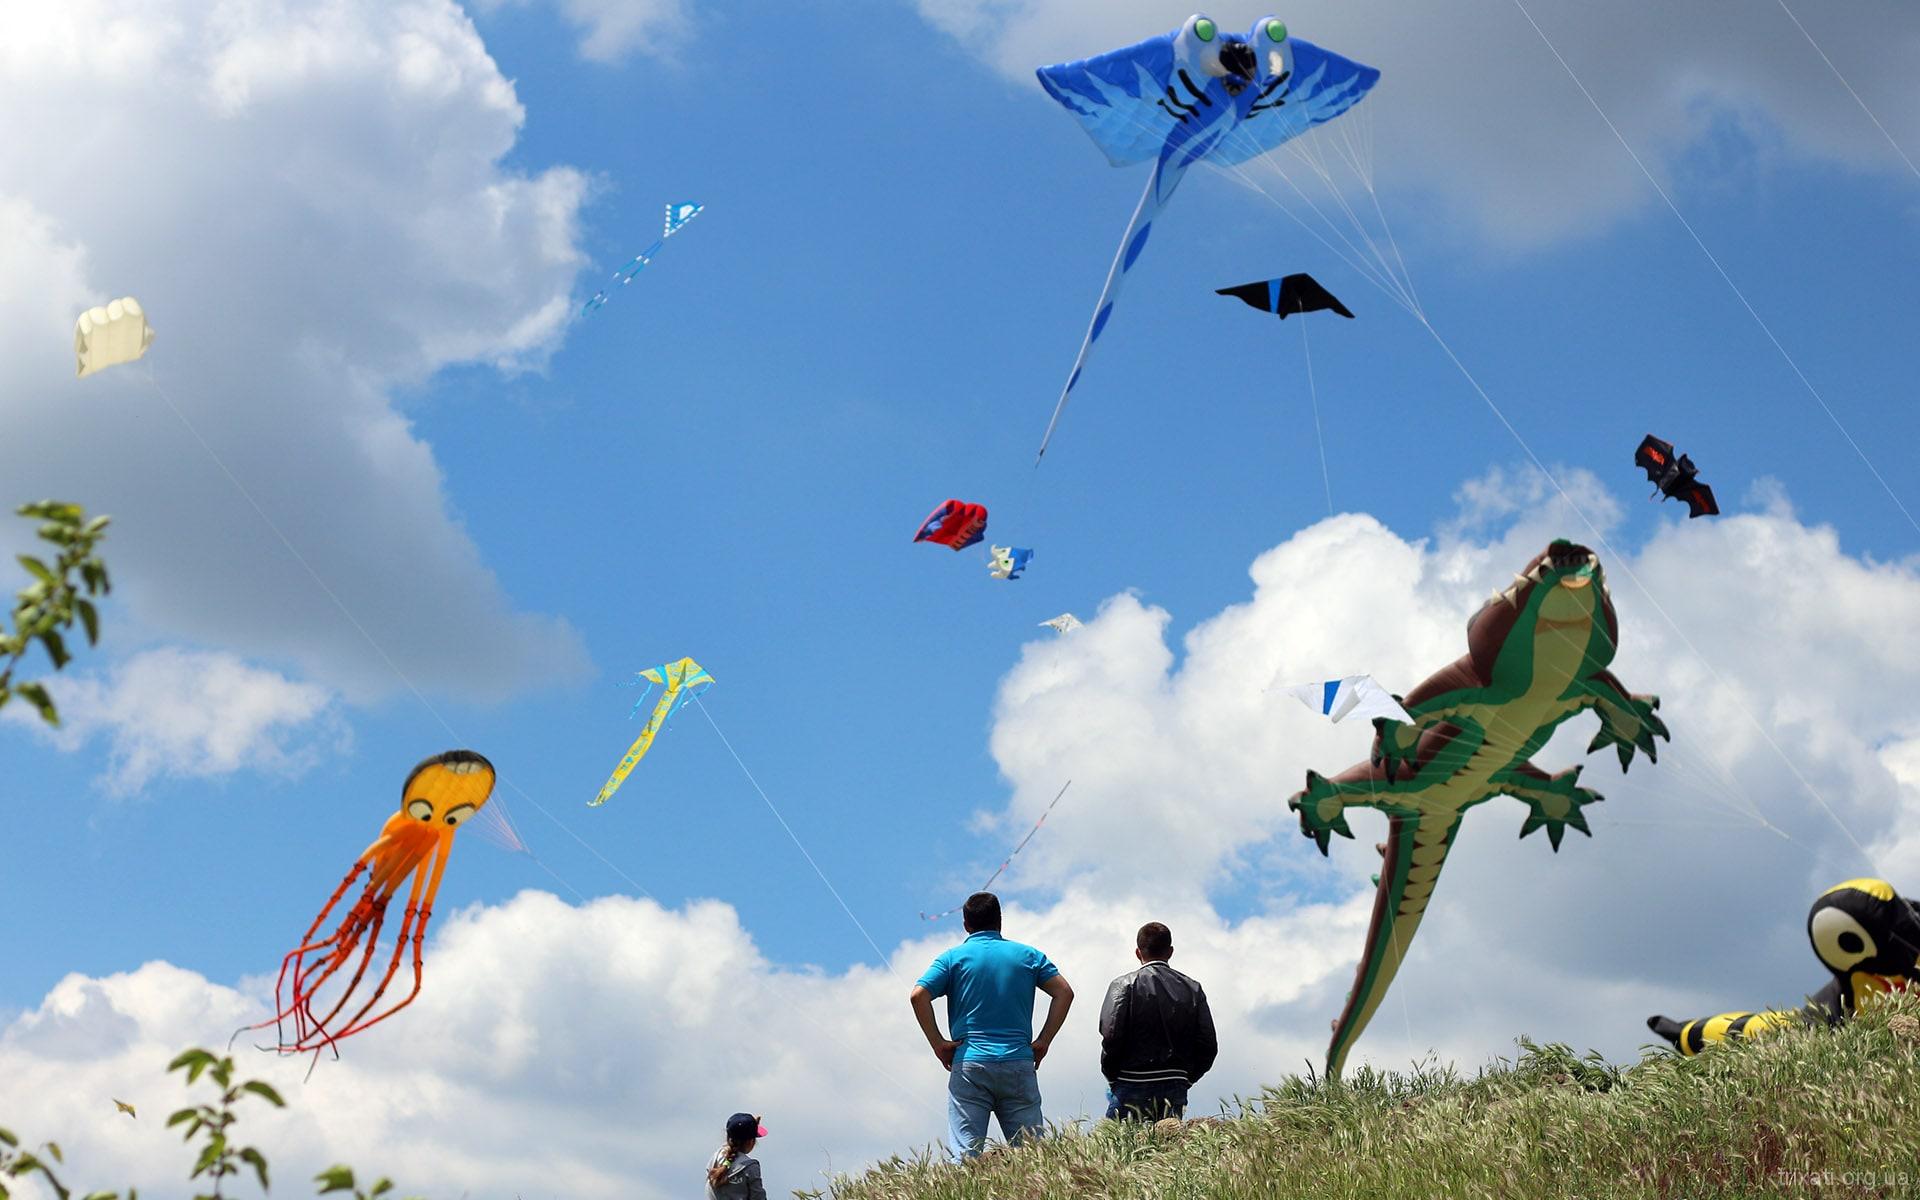 Tryhutty International Kite Festival 2017